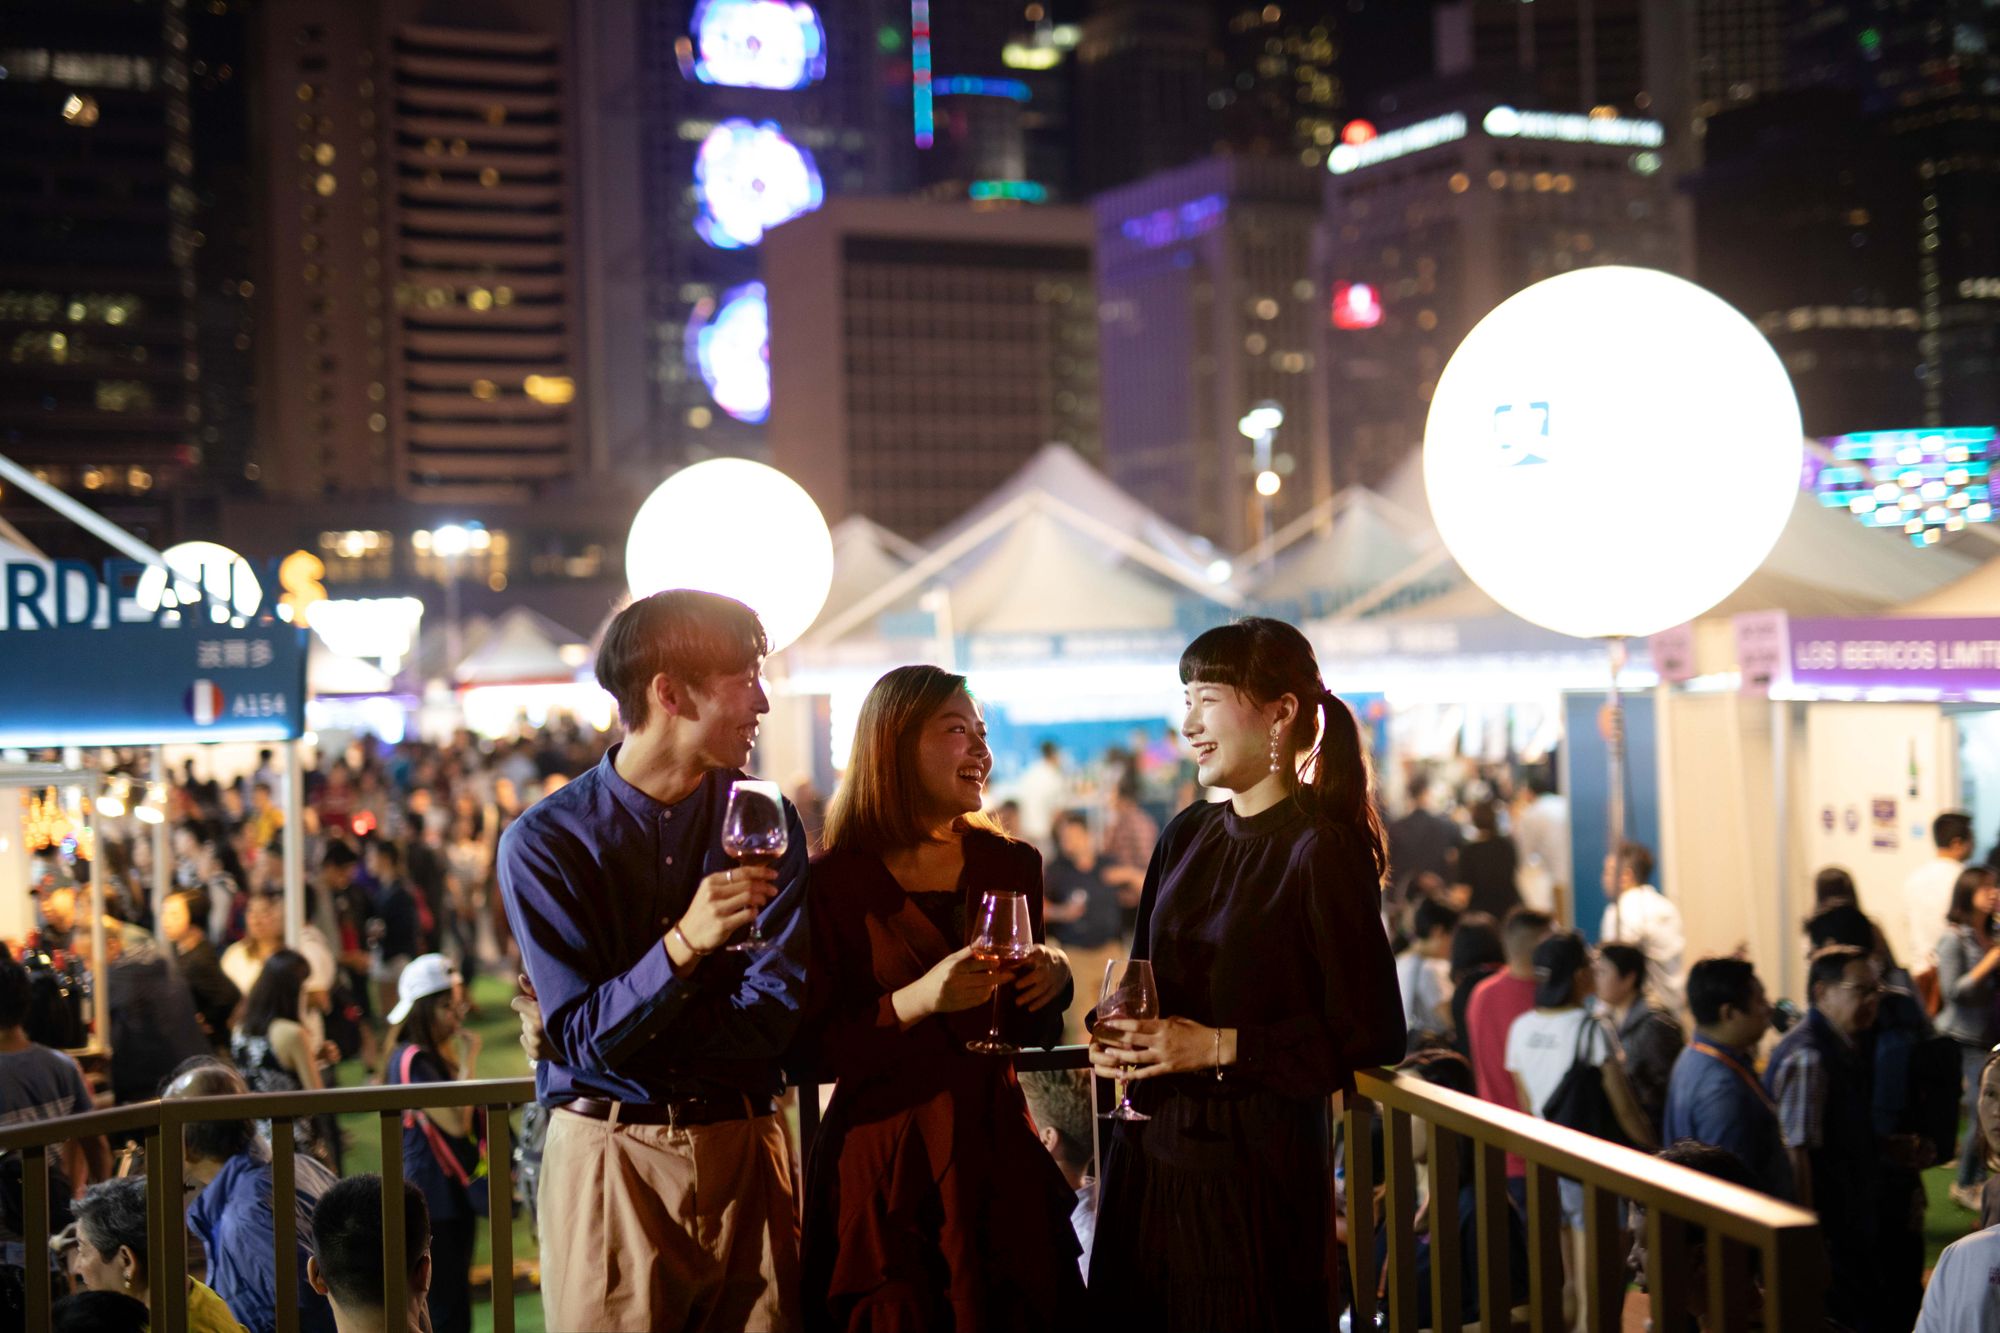 Hong Kong Wine & Dine Festival